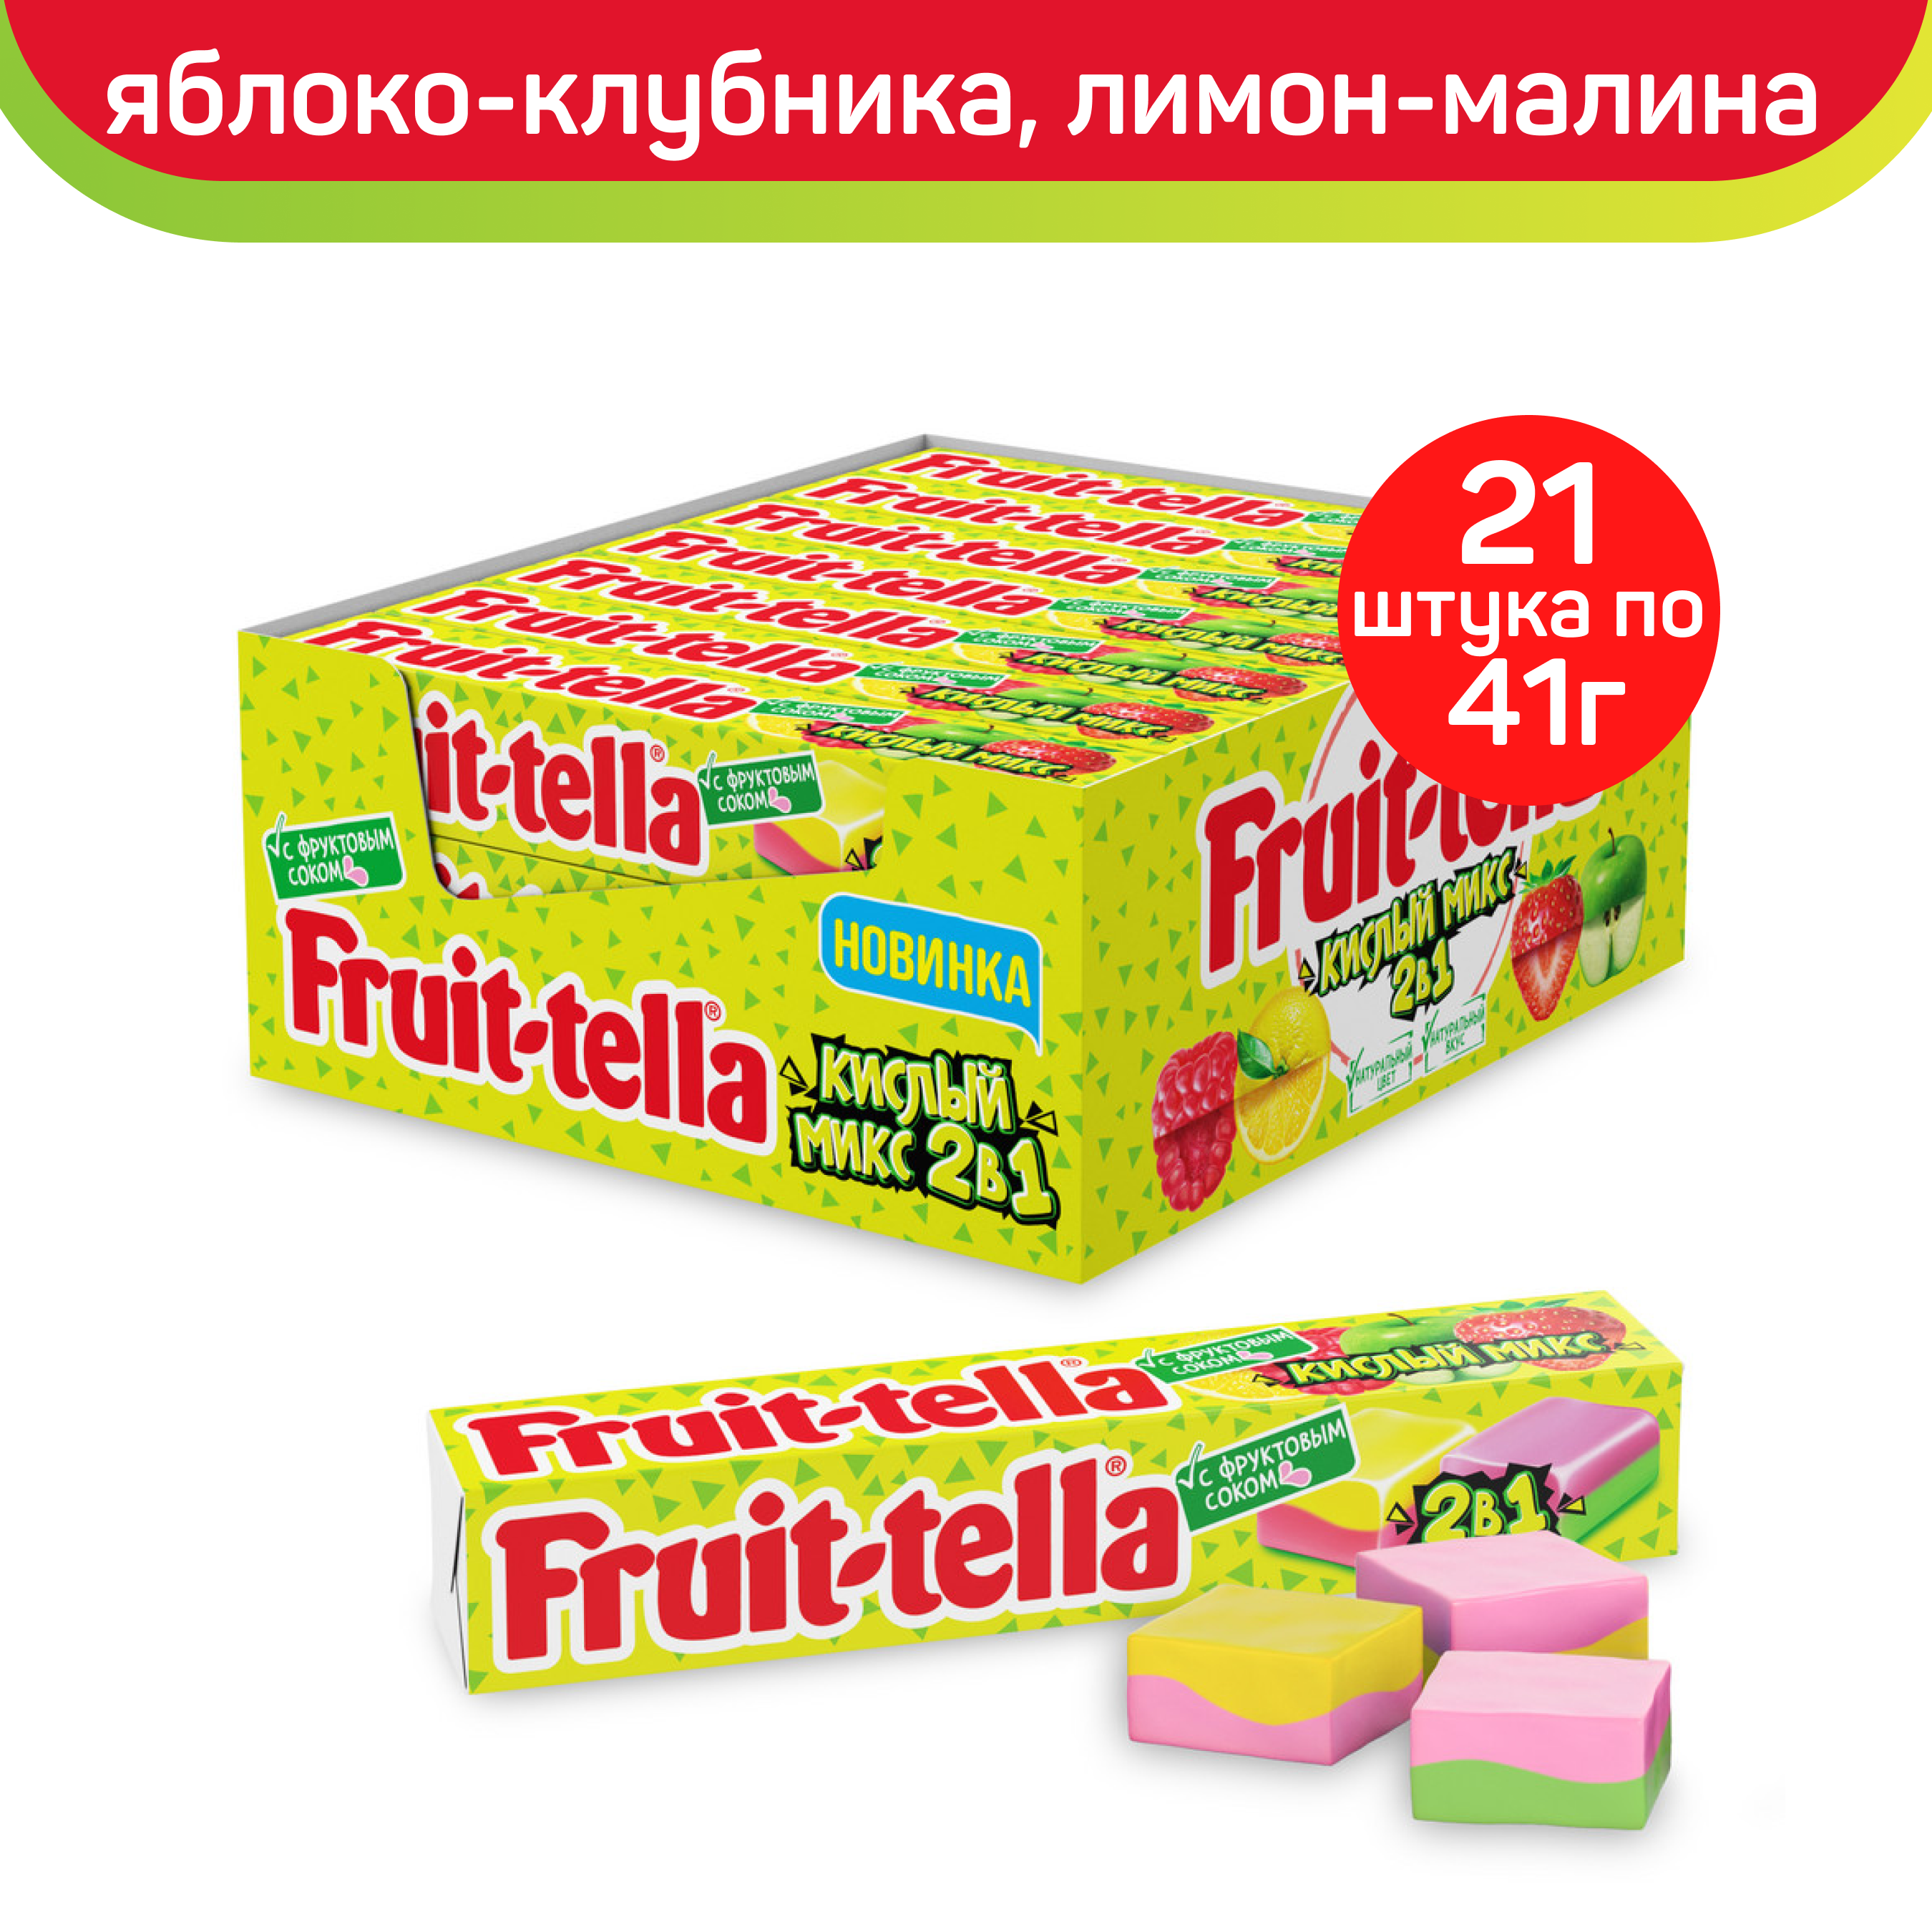 Жевательные конфеты Fruit-tella Кислый Микс 2 в 1, блок, 21 шт по 41 г